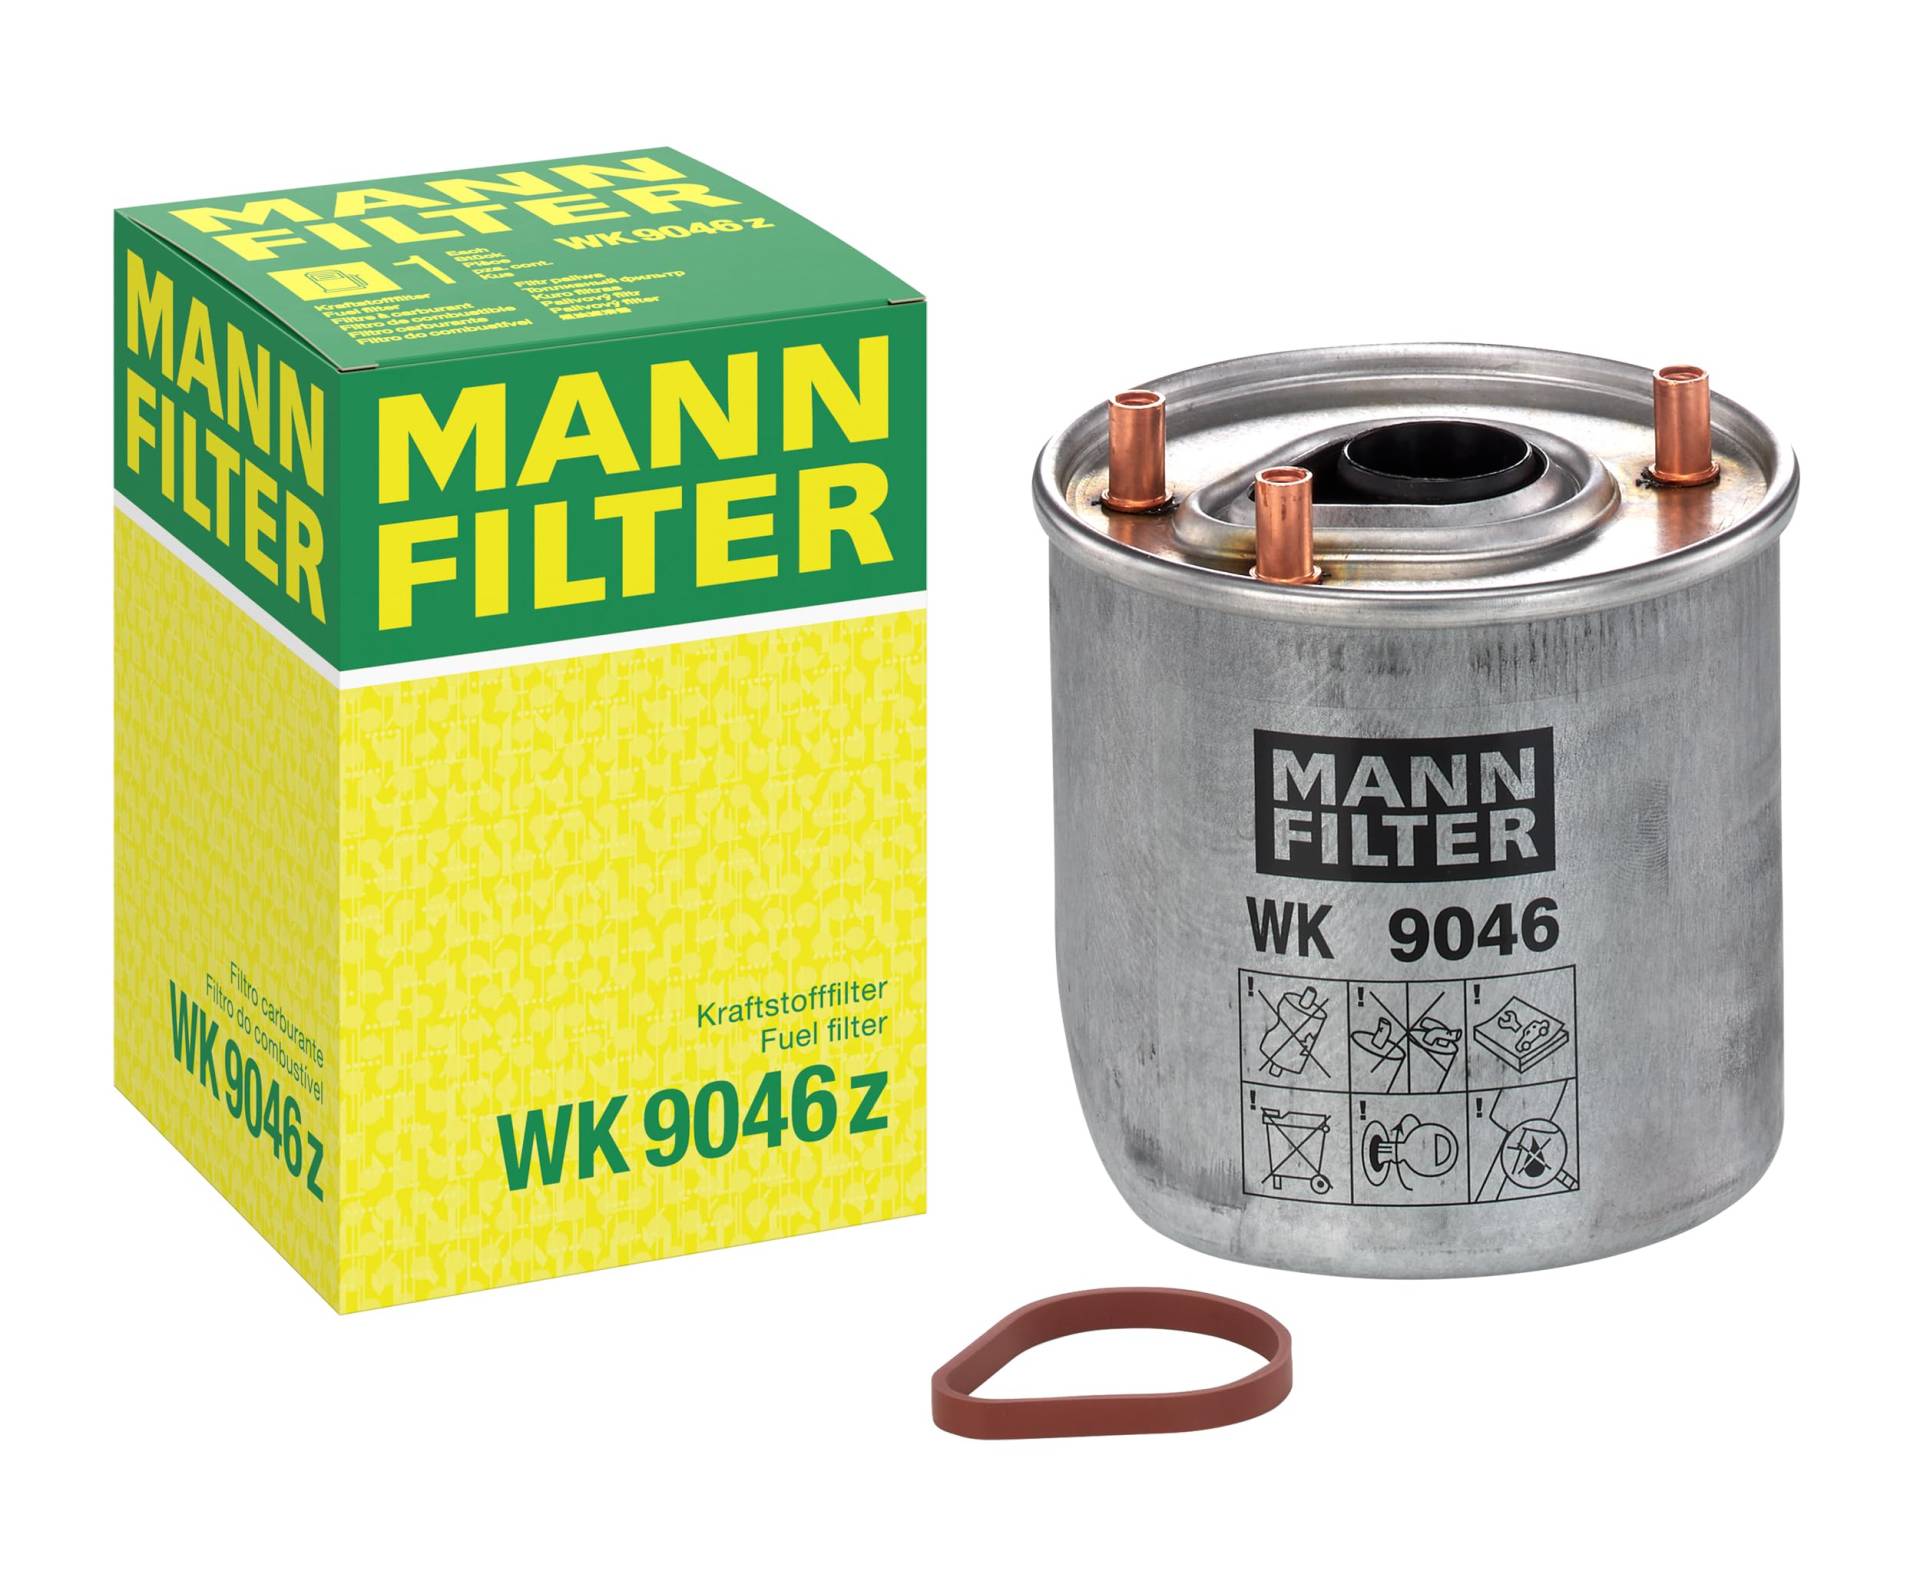 MANN-FILTER WK 9046 Z Kraftstofffilter – Kraftstofffilter Satz mit Dichtung / Dichtungssatz – Für PKW von MANN-FILTER